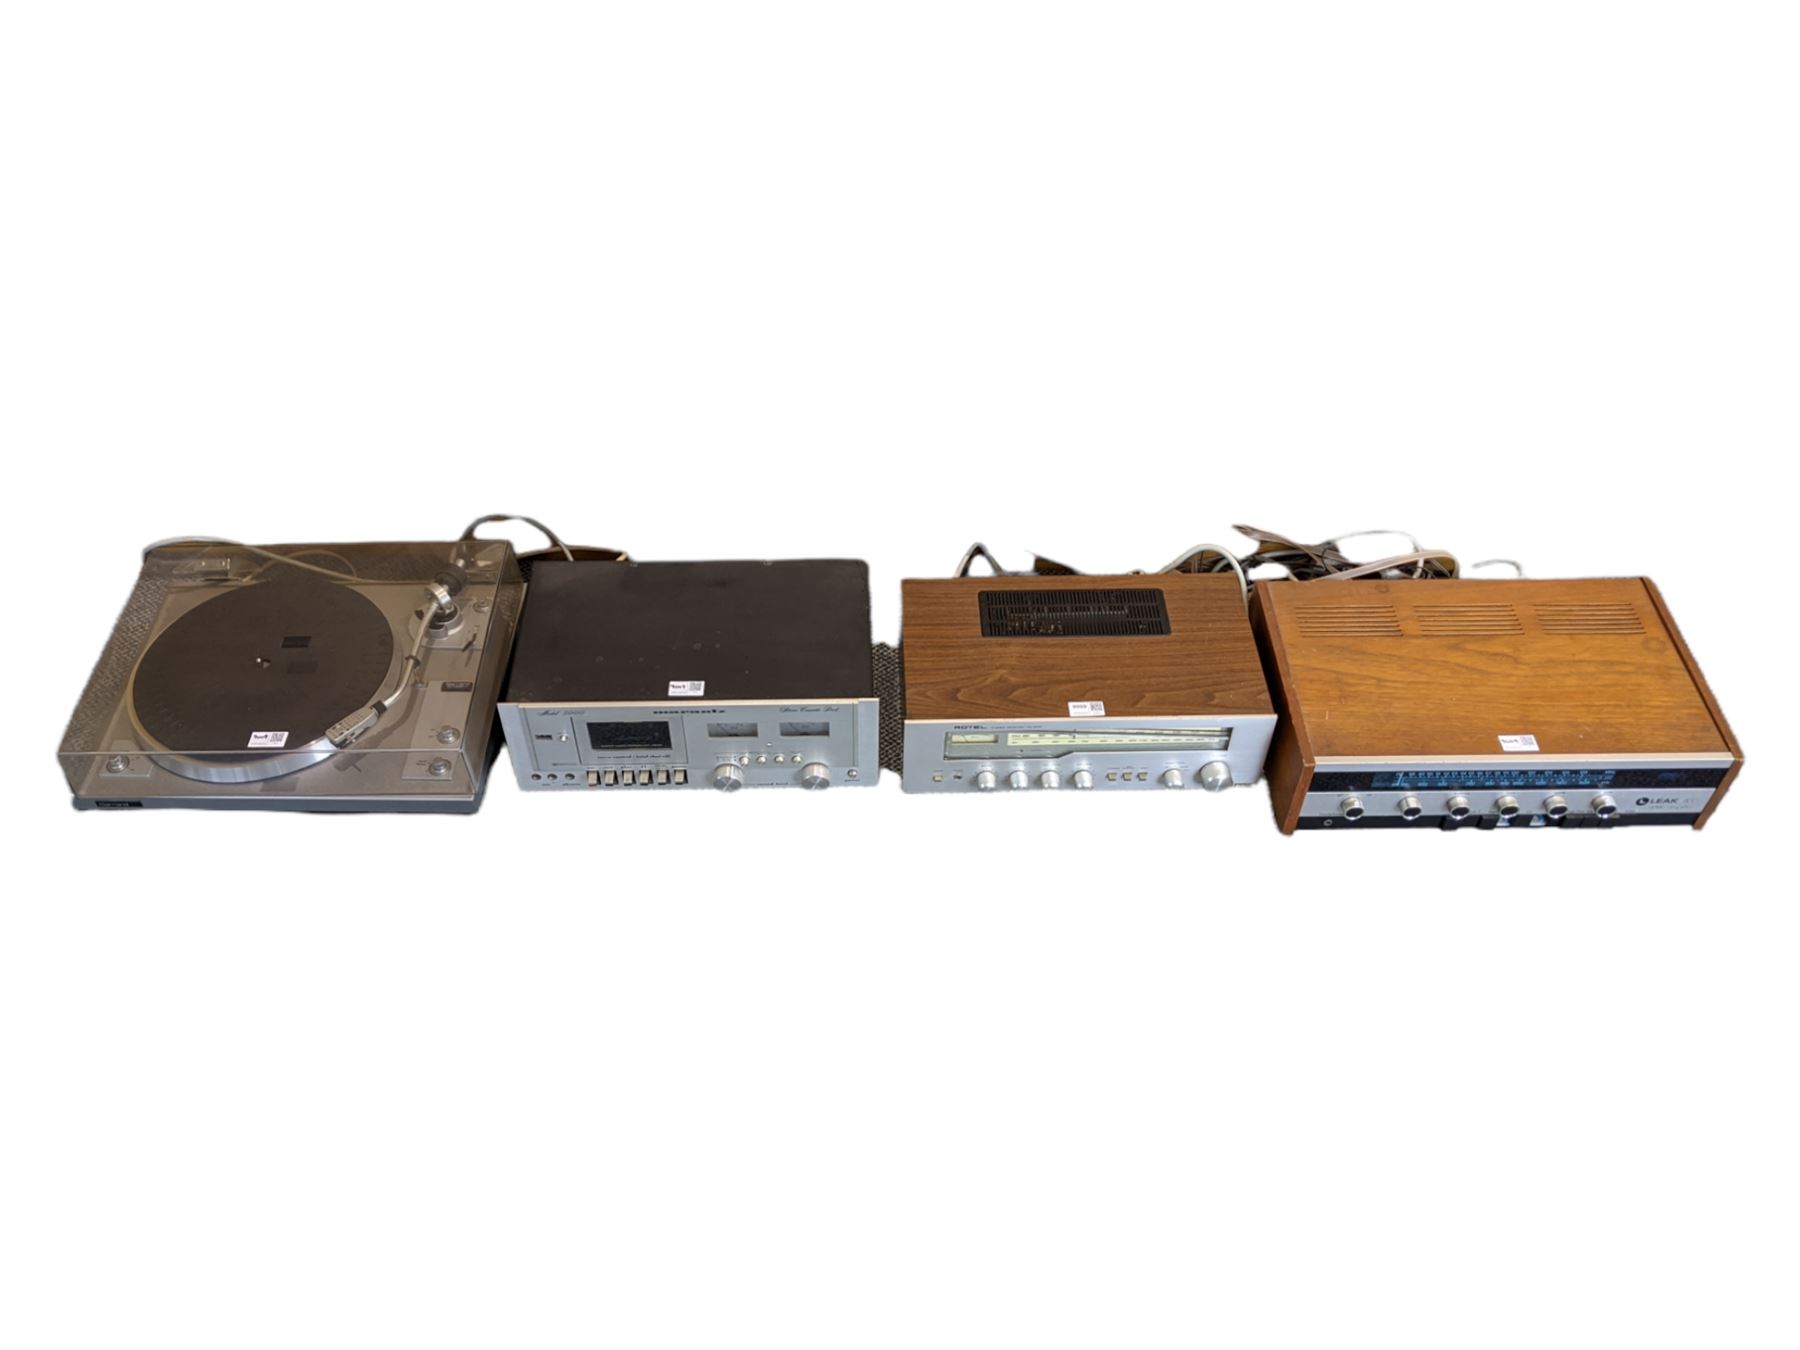 Audio equipment comprising a Leak 1800 tuner amplifier